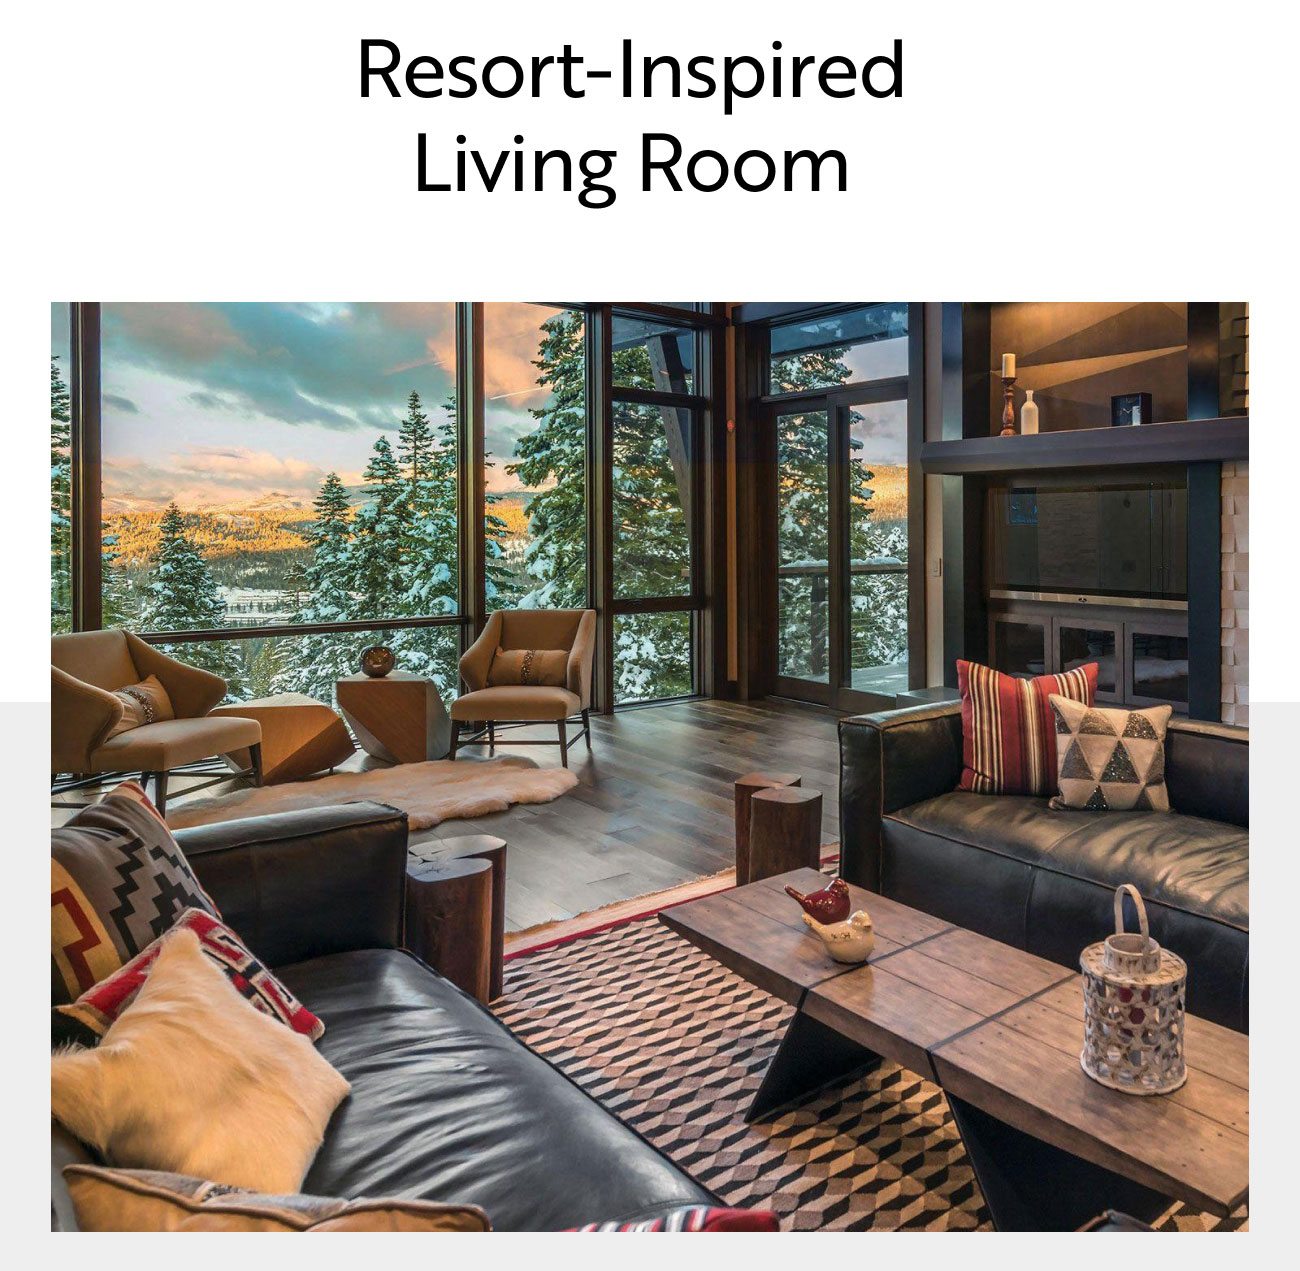 Resort-Inspired Living Room